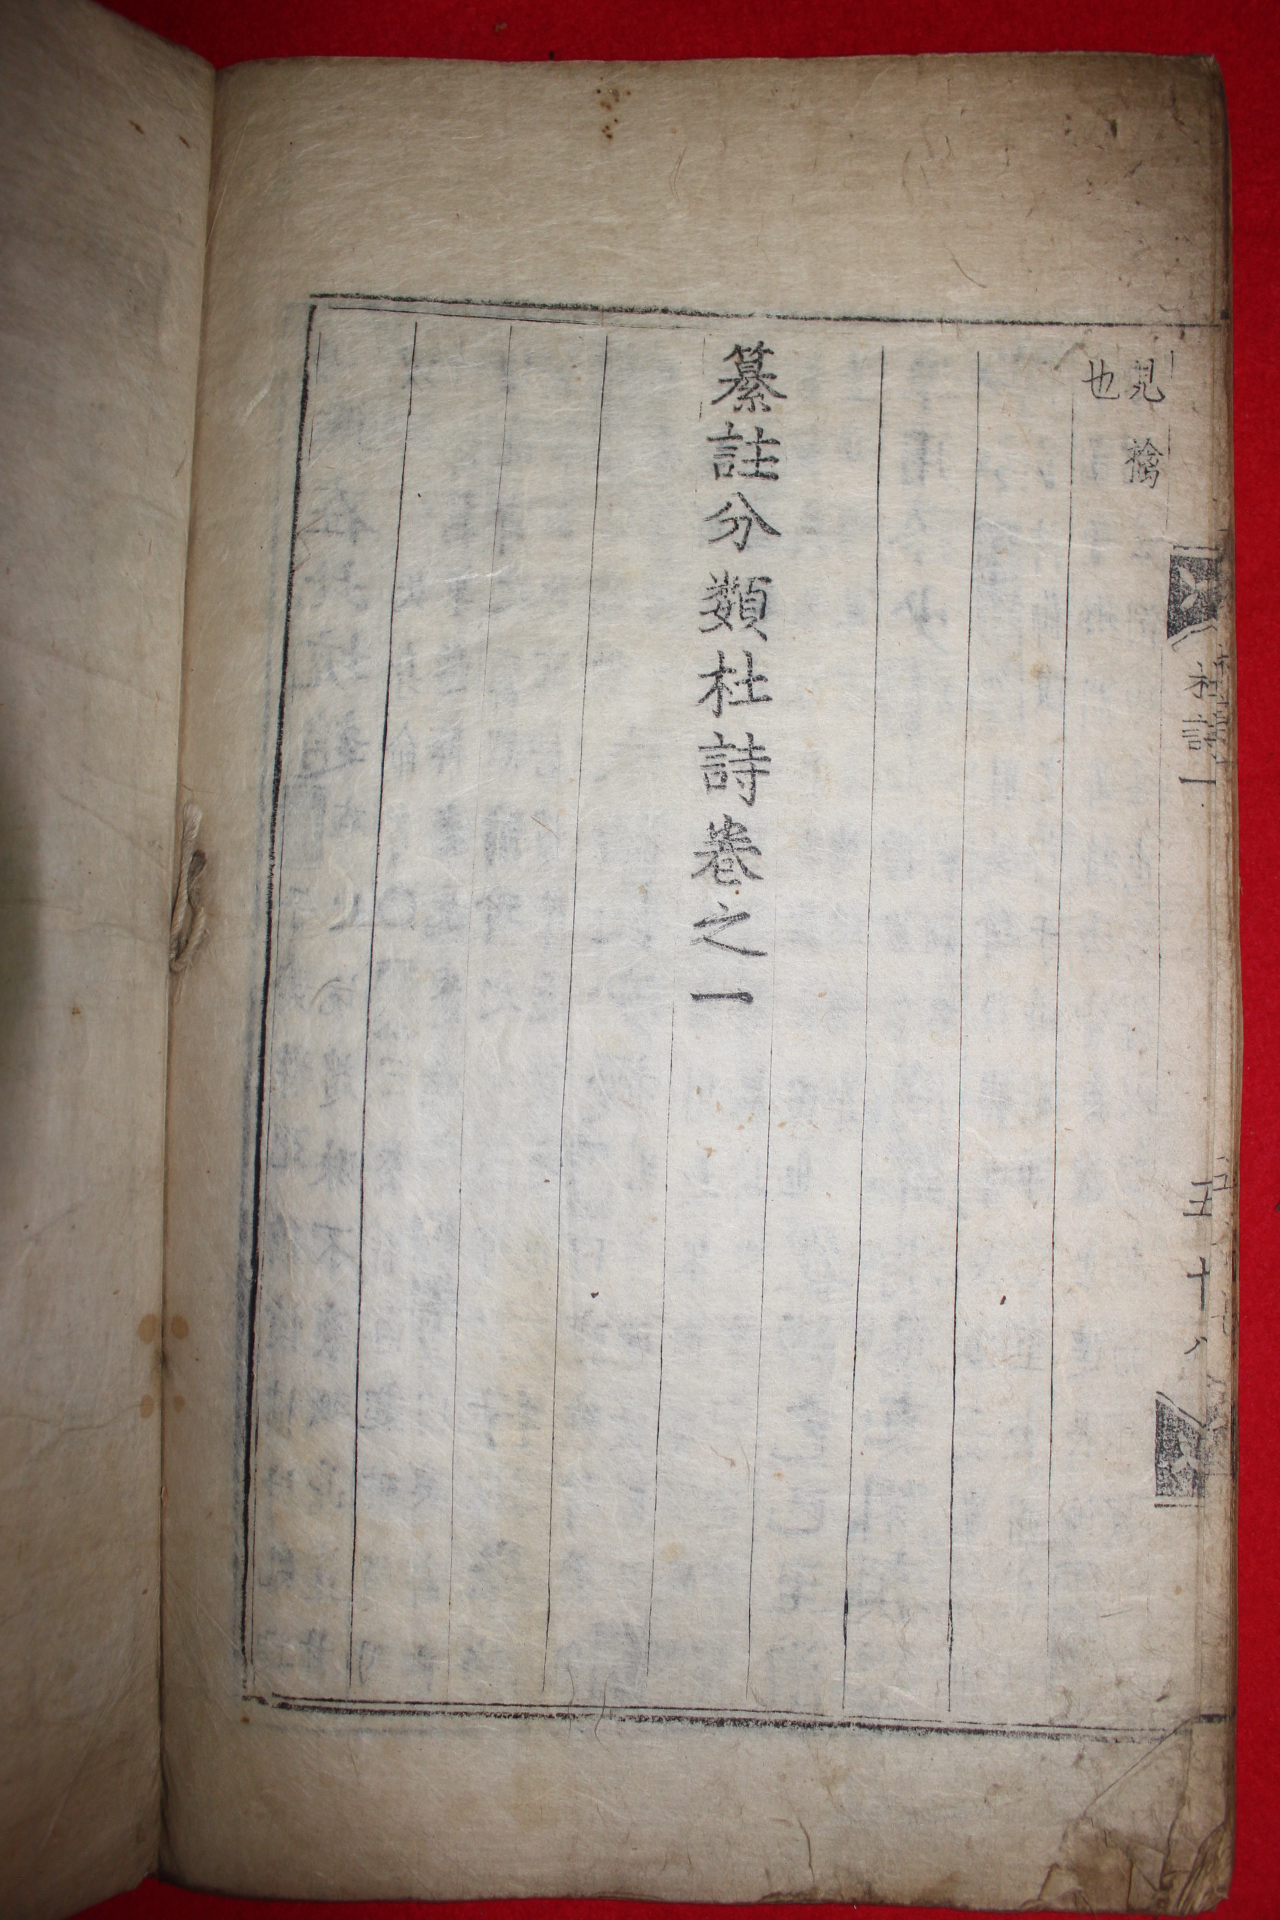 1500년대 금속활자본(초주갑인자) 두보(杜甫) 찬주분류두시(纂註分類杜詩)권1   1책